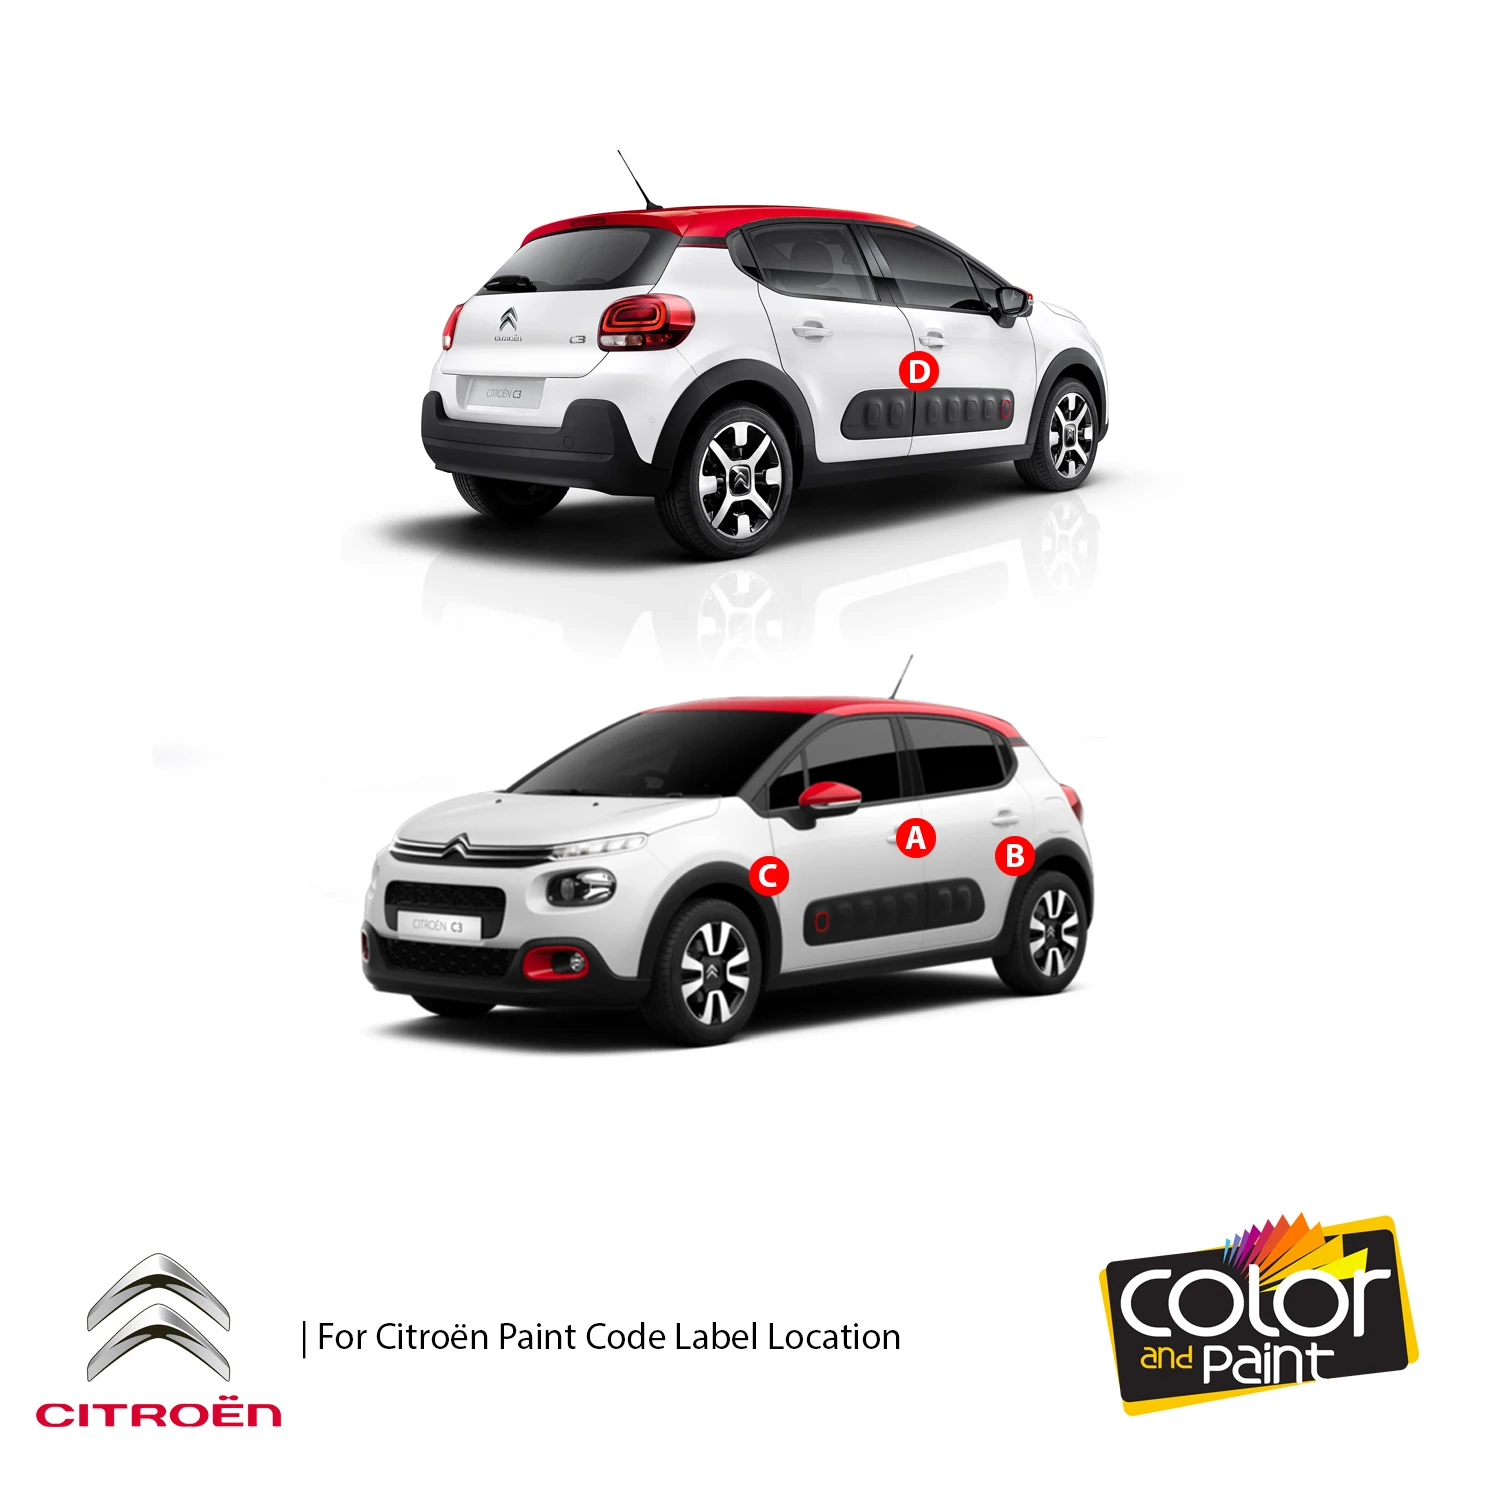 

Color and Paint for Citroen Automotive Touch Up Paint - NOIR CALDERA MET - EXZ - Paint Scratch Repair, exact Match